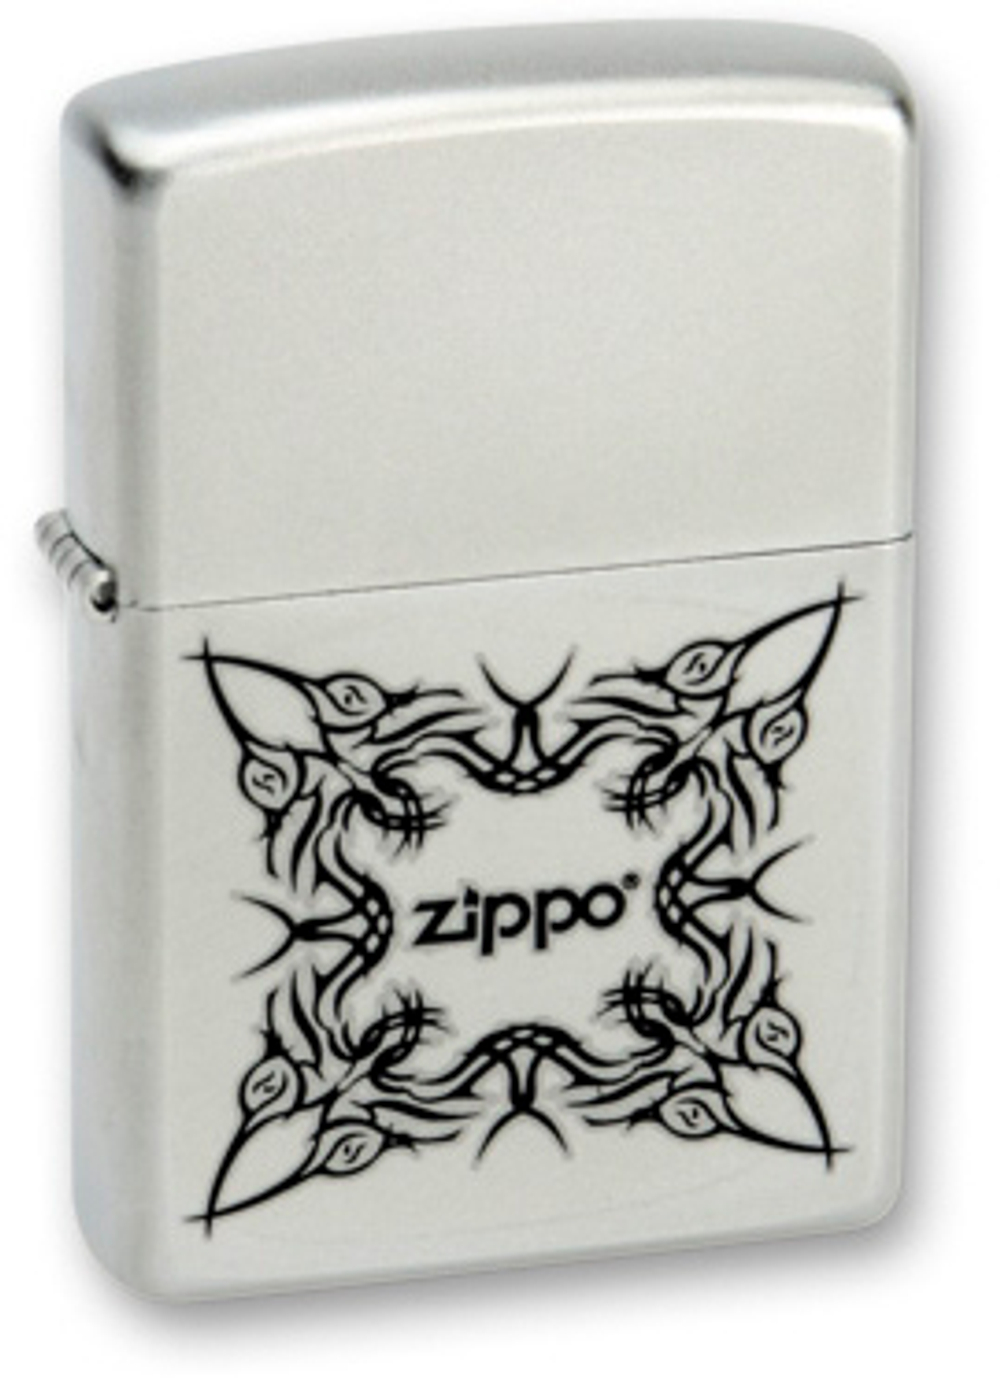 Легендарная классическая американская бензиновая широкая зажигалка ZIPPO Classic Satin Chrome™ серебристая матовая из латуни и стали Орнамент в виде татуировки с надписью Zippo ZP-205Tattoo Design